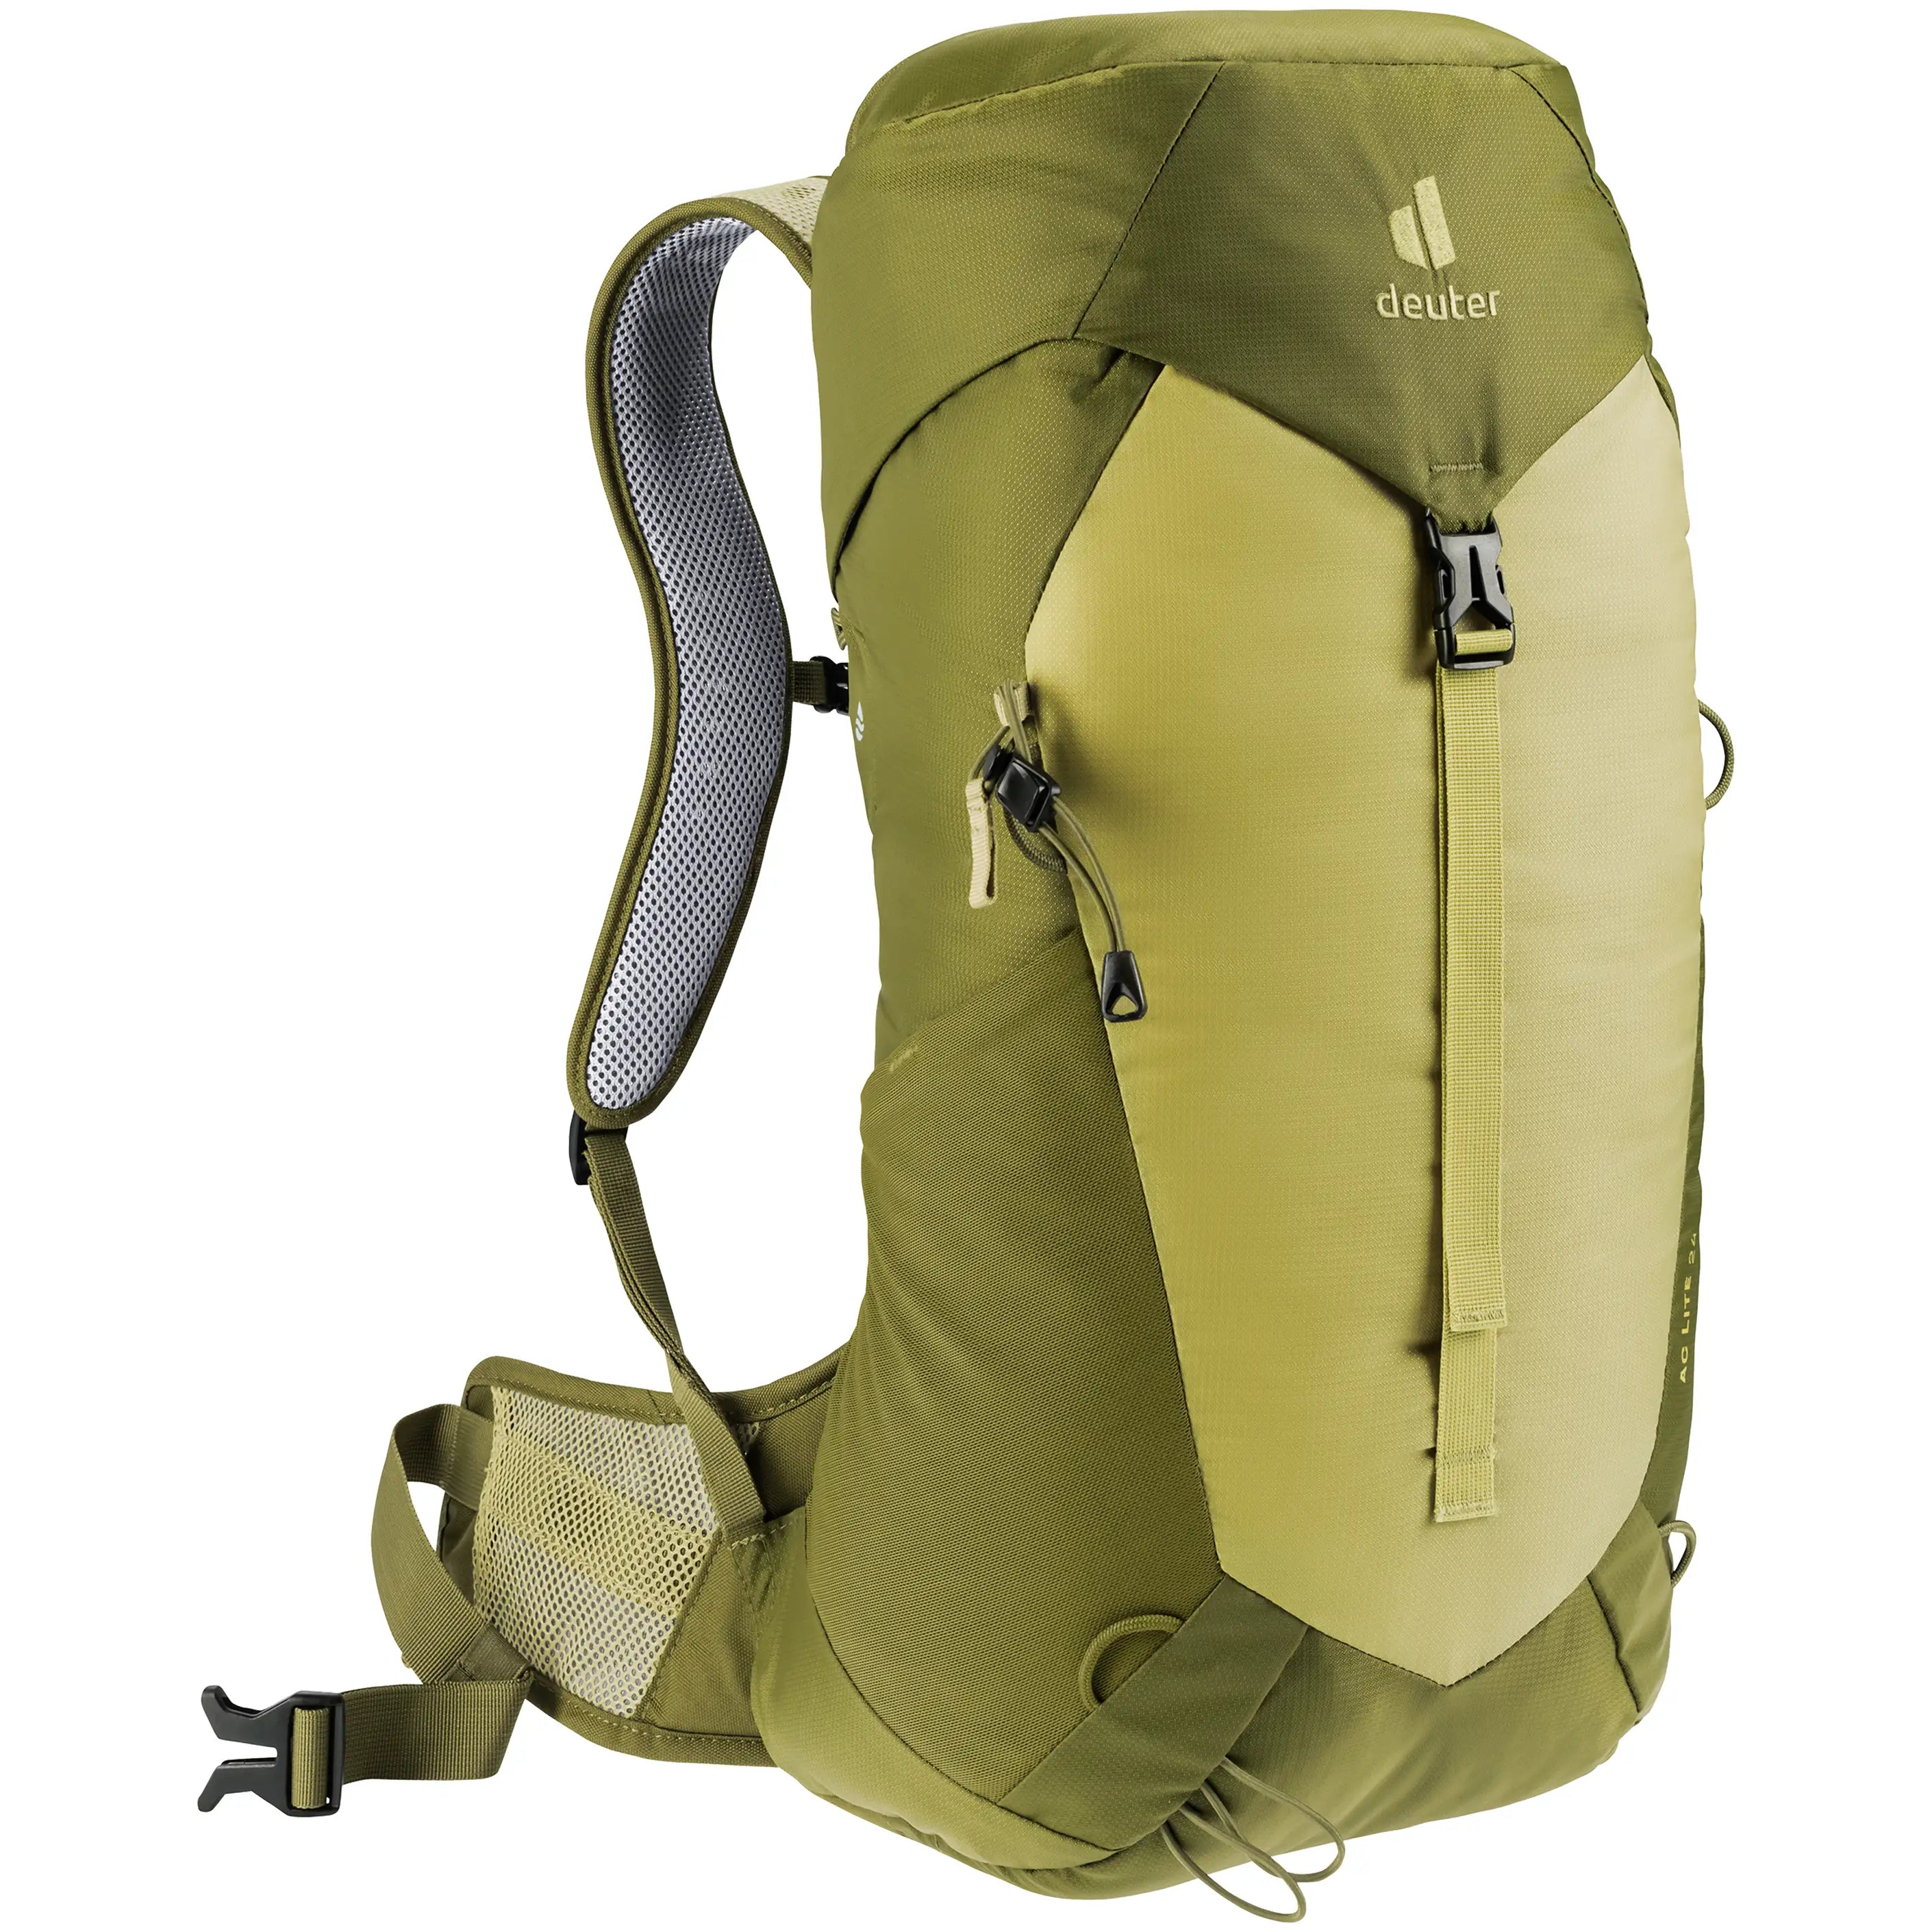 Deuter Travel AC Lite 24 hiking backpack 56 cm - Linden-Cactus